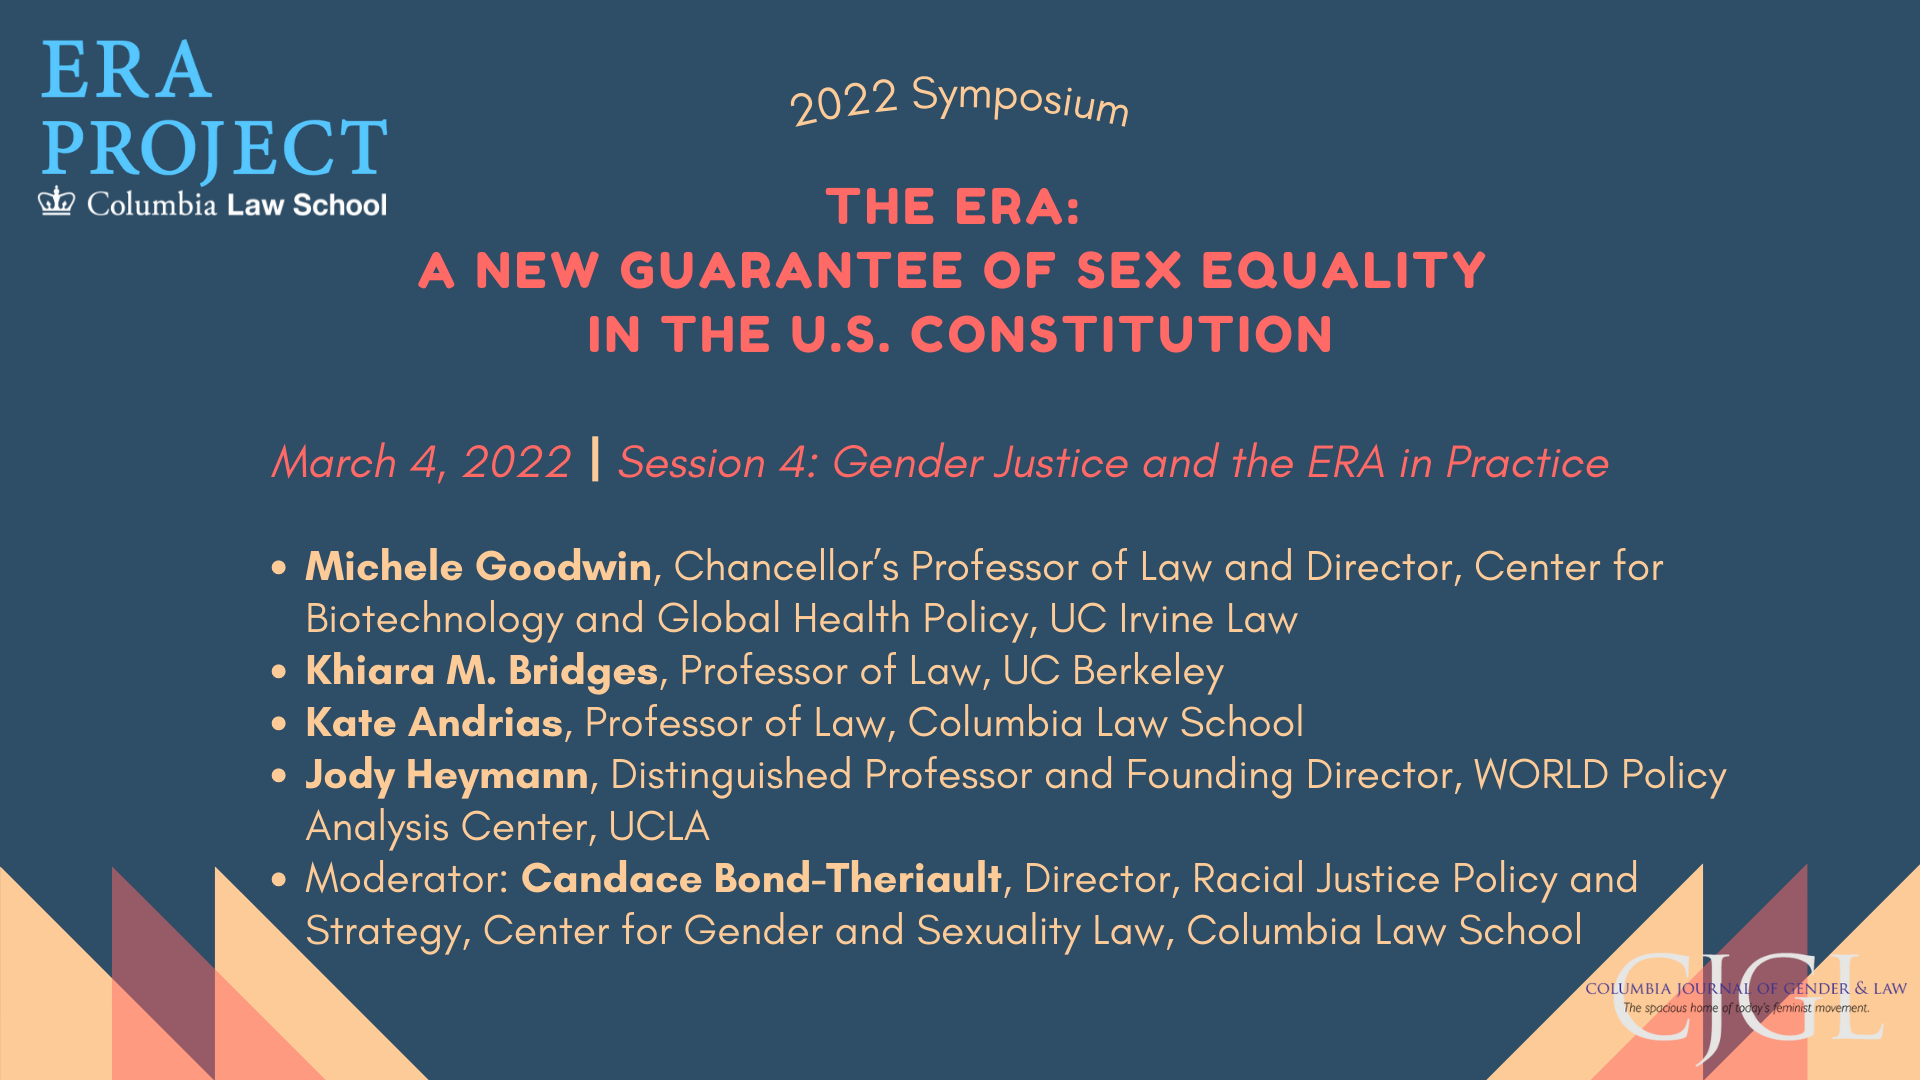 ERA Symposium 2022 - Session 4 - Gender Justice and the ERA in Practice